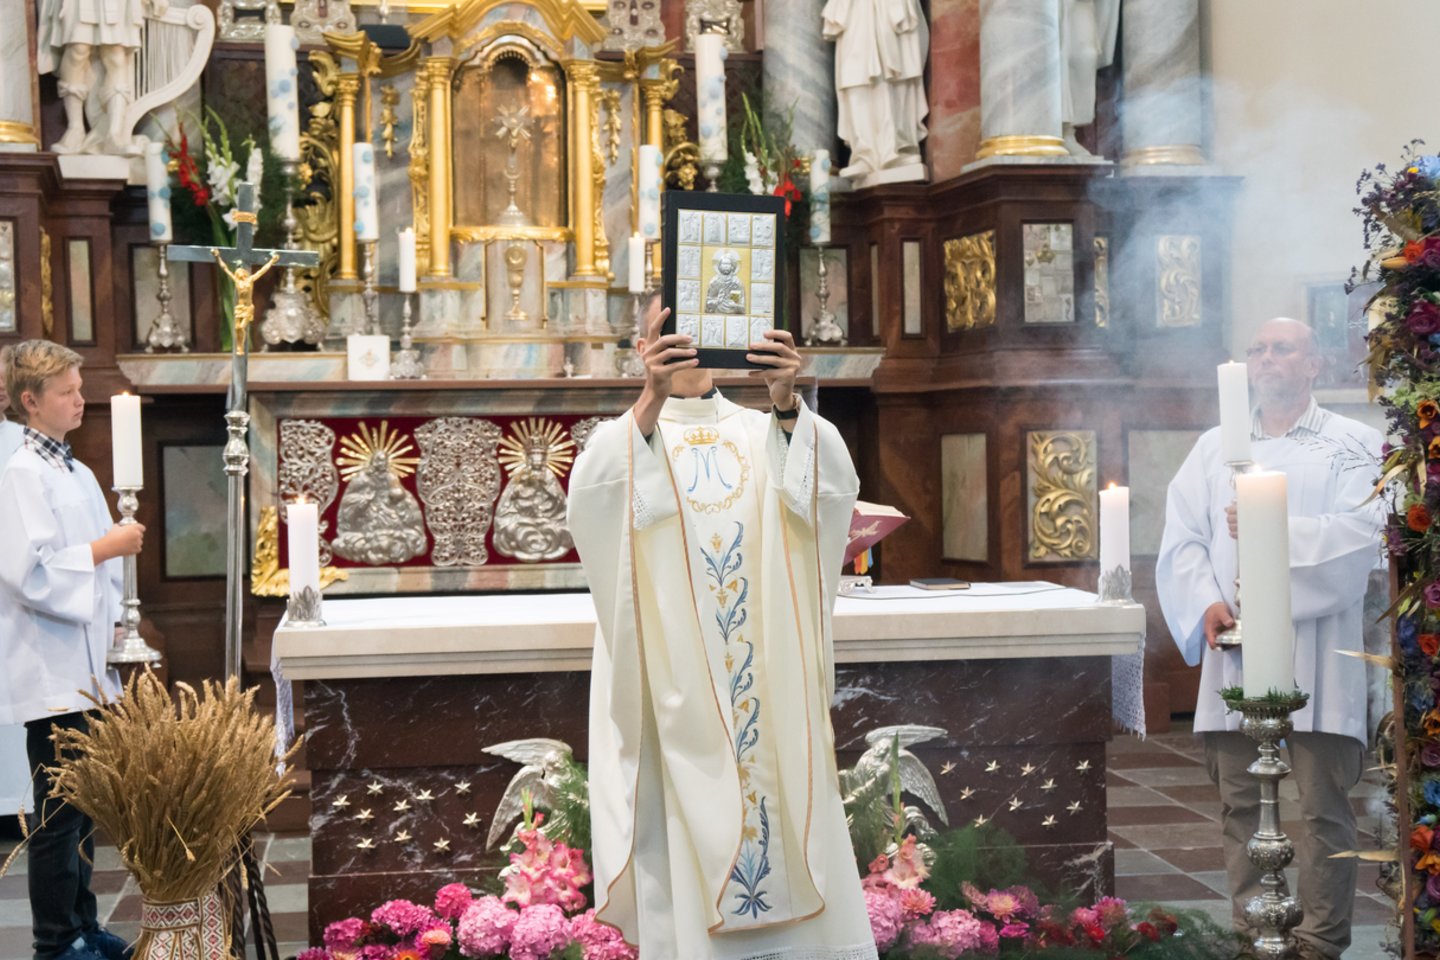  Žolinė, Švč. Mergelės Marijos ėmimo į dangų šventė.<br> Trakų raj. savivaldybės nuotr.